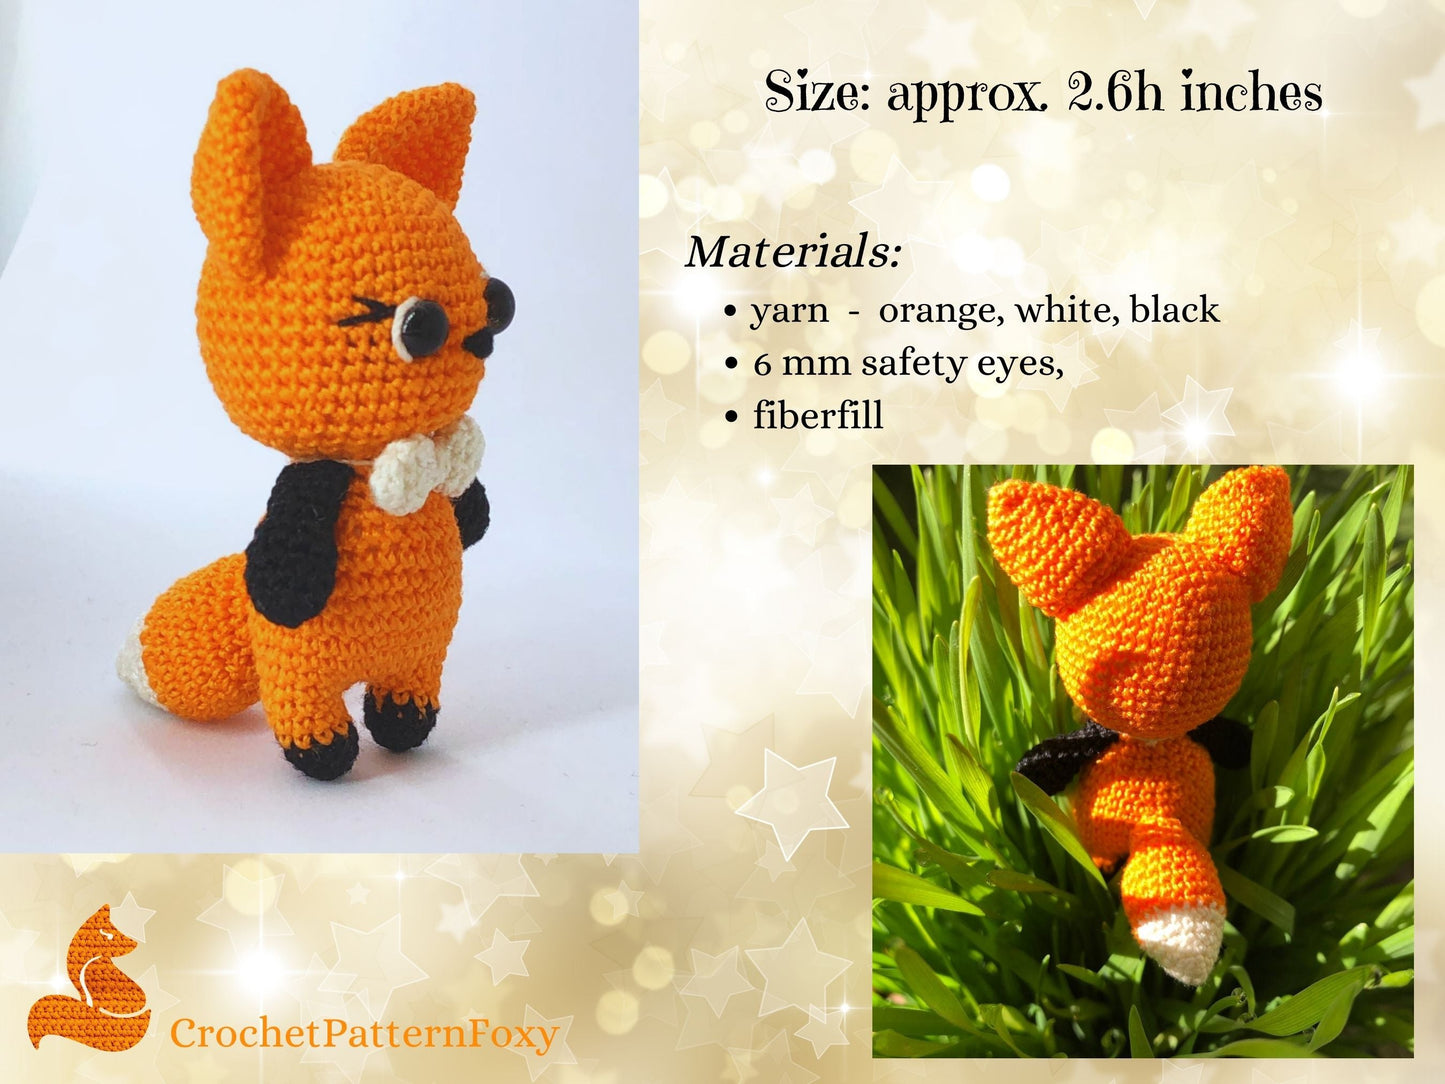 Fox Amigurumi Crochet Pattern PDF